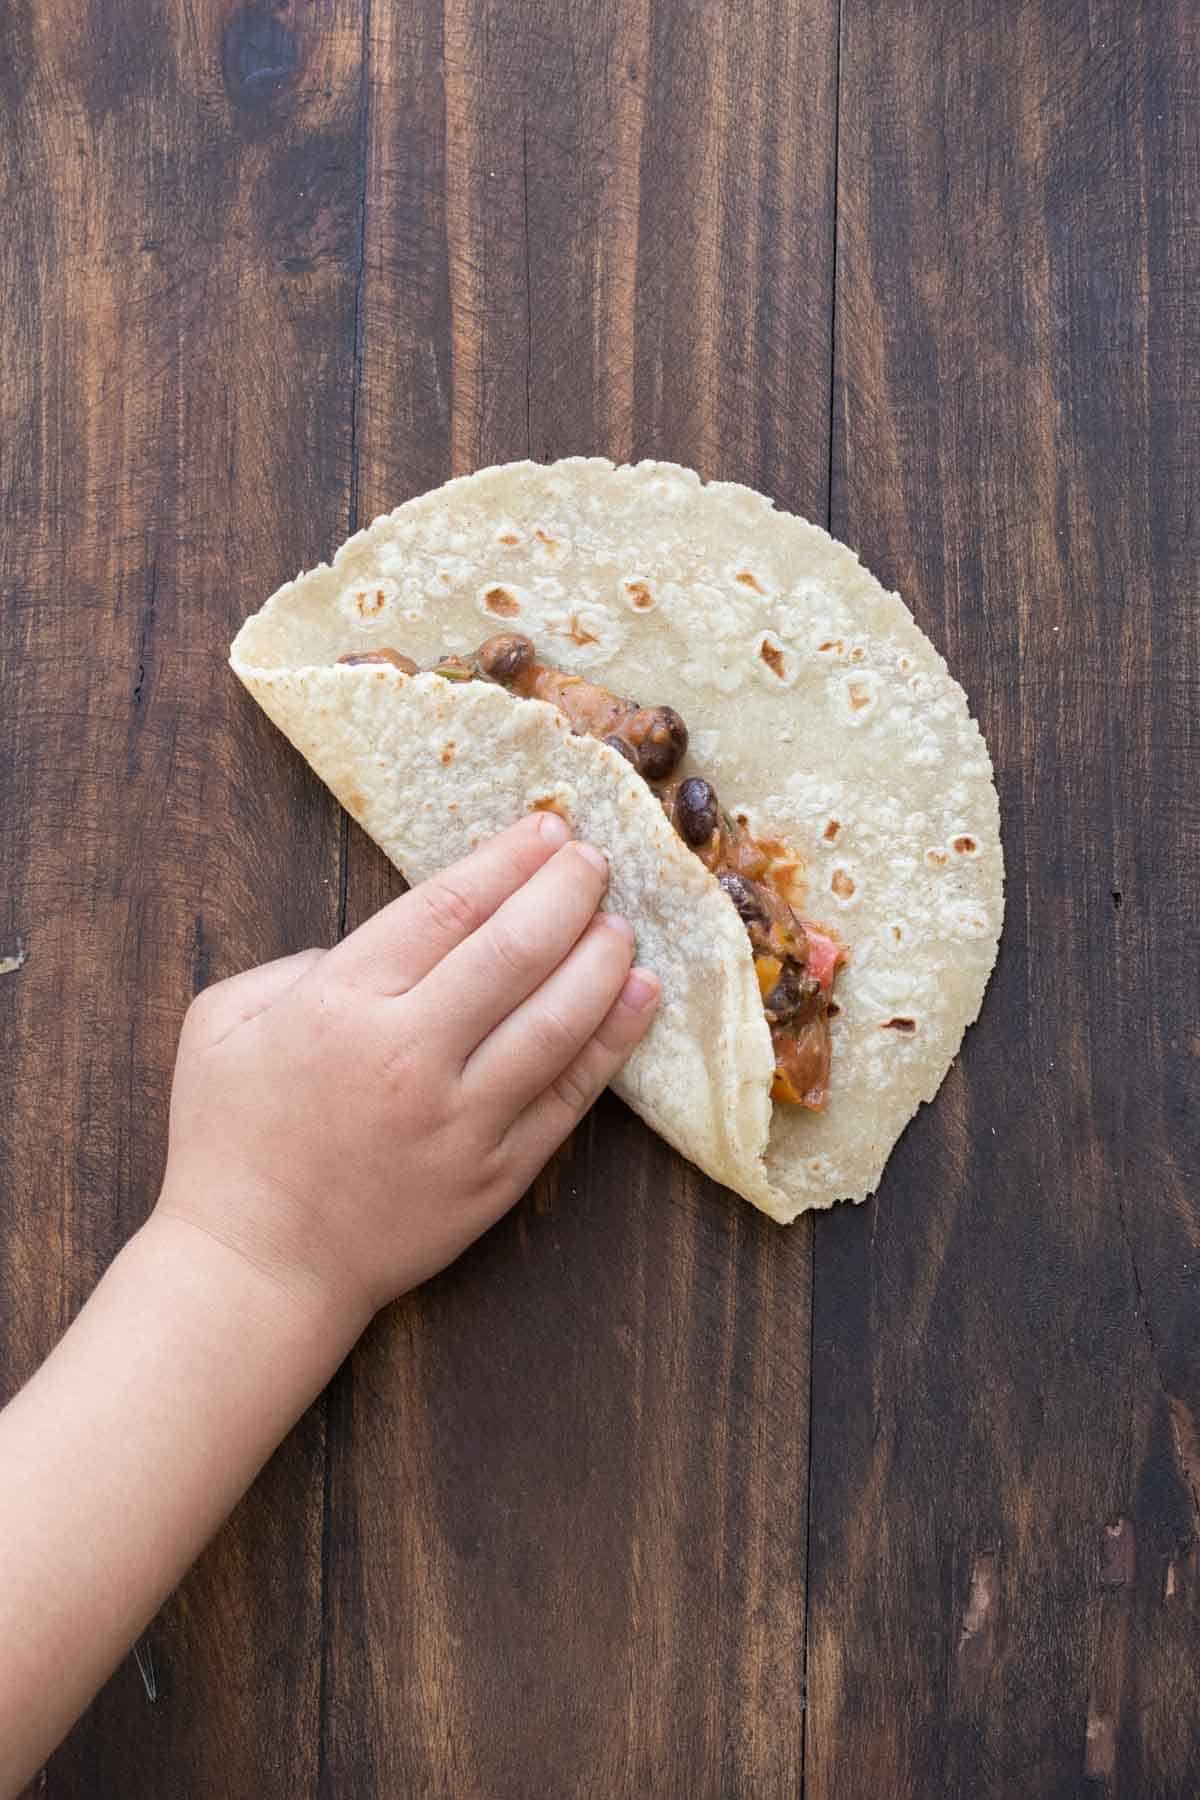 A kids hand folding over a tortilla filled with bean veggie mix.